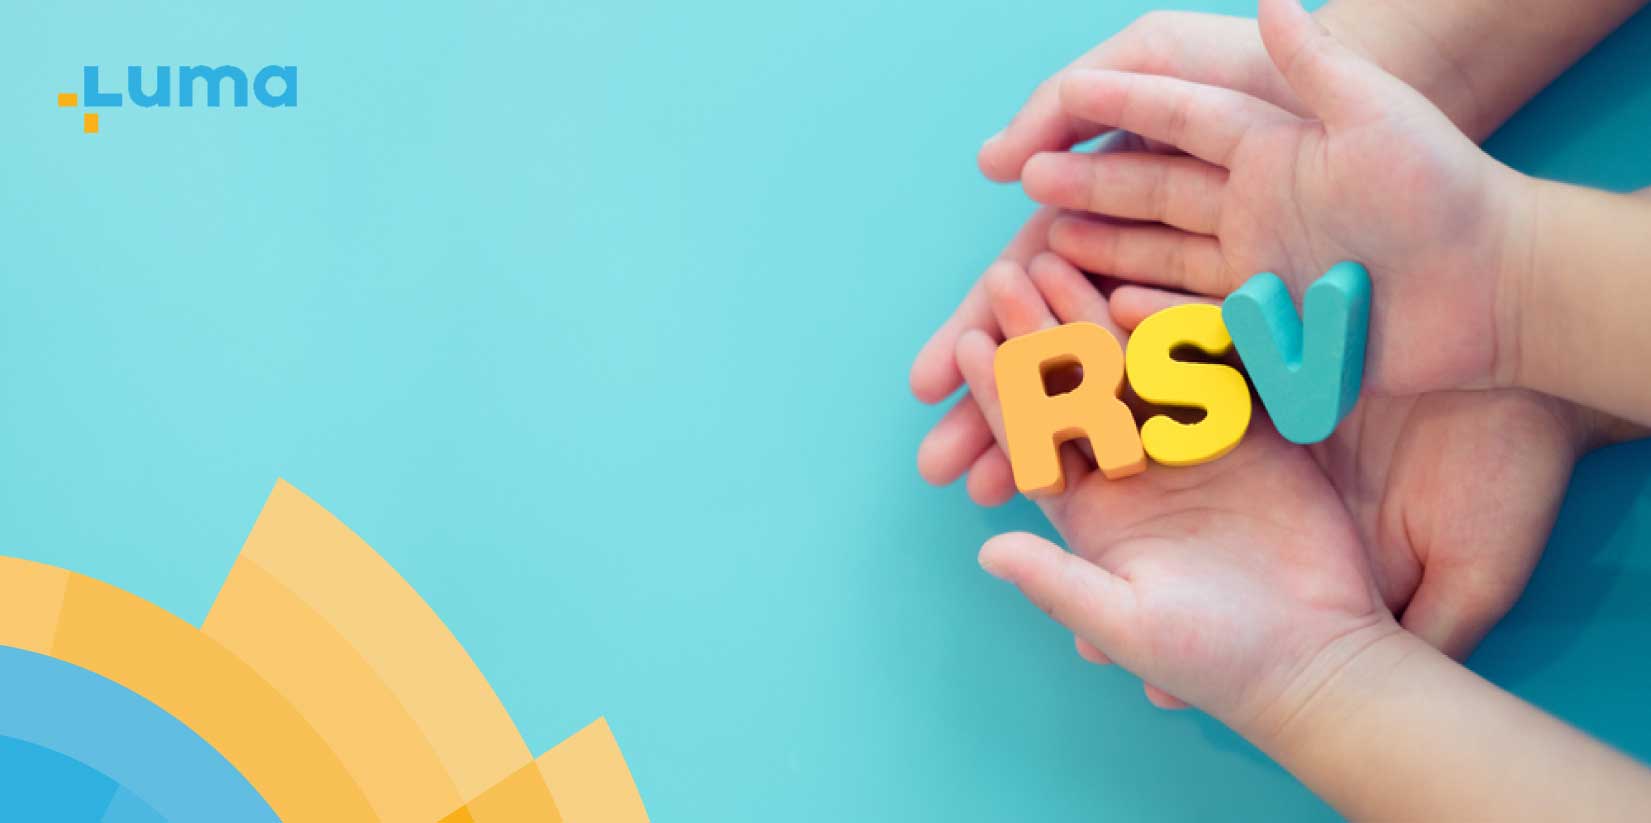 ค่ารักษา RSV, ค่ารักษา RSV ในโรงพยาบาลเท่าไหร่